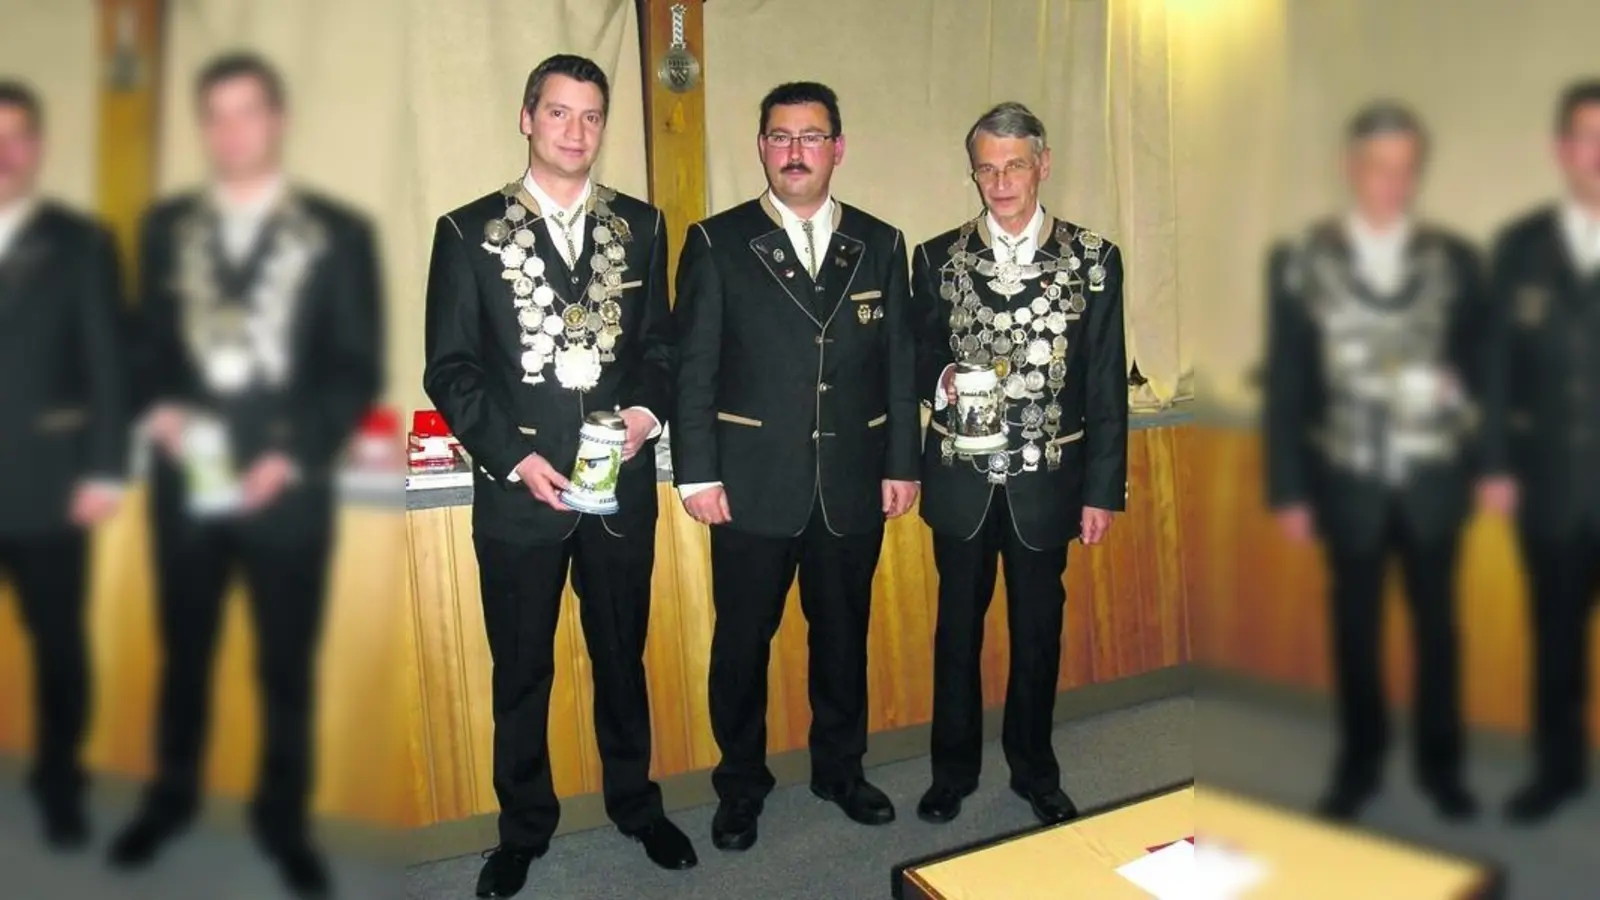 &lt;p&gt; &lt;x_bildunterschr&gt; &lt;b&gt;Schützenmeister Hellmut Schwarzer  &lt;/b&gt;(Mitte) präsentierte die neuen Könige der Tell-Schützen: LP-König Michael Feiger (links) und LG-König Wilfried Gaßner (rechts). &lt;tab/&gt;Foto: rmü &lt;/x_bildunterschr&gt; &lt;/p&gt;